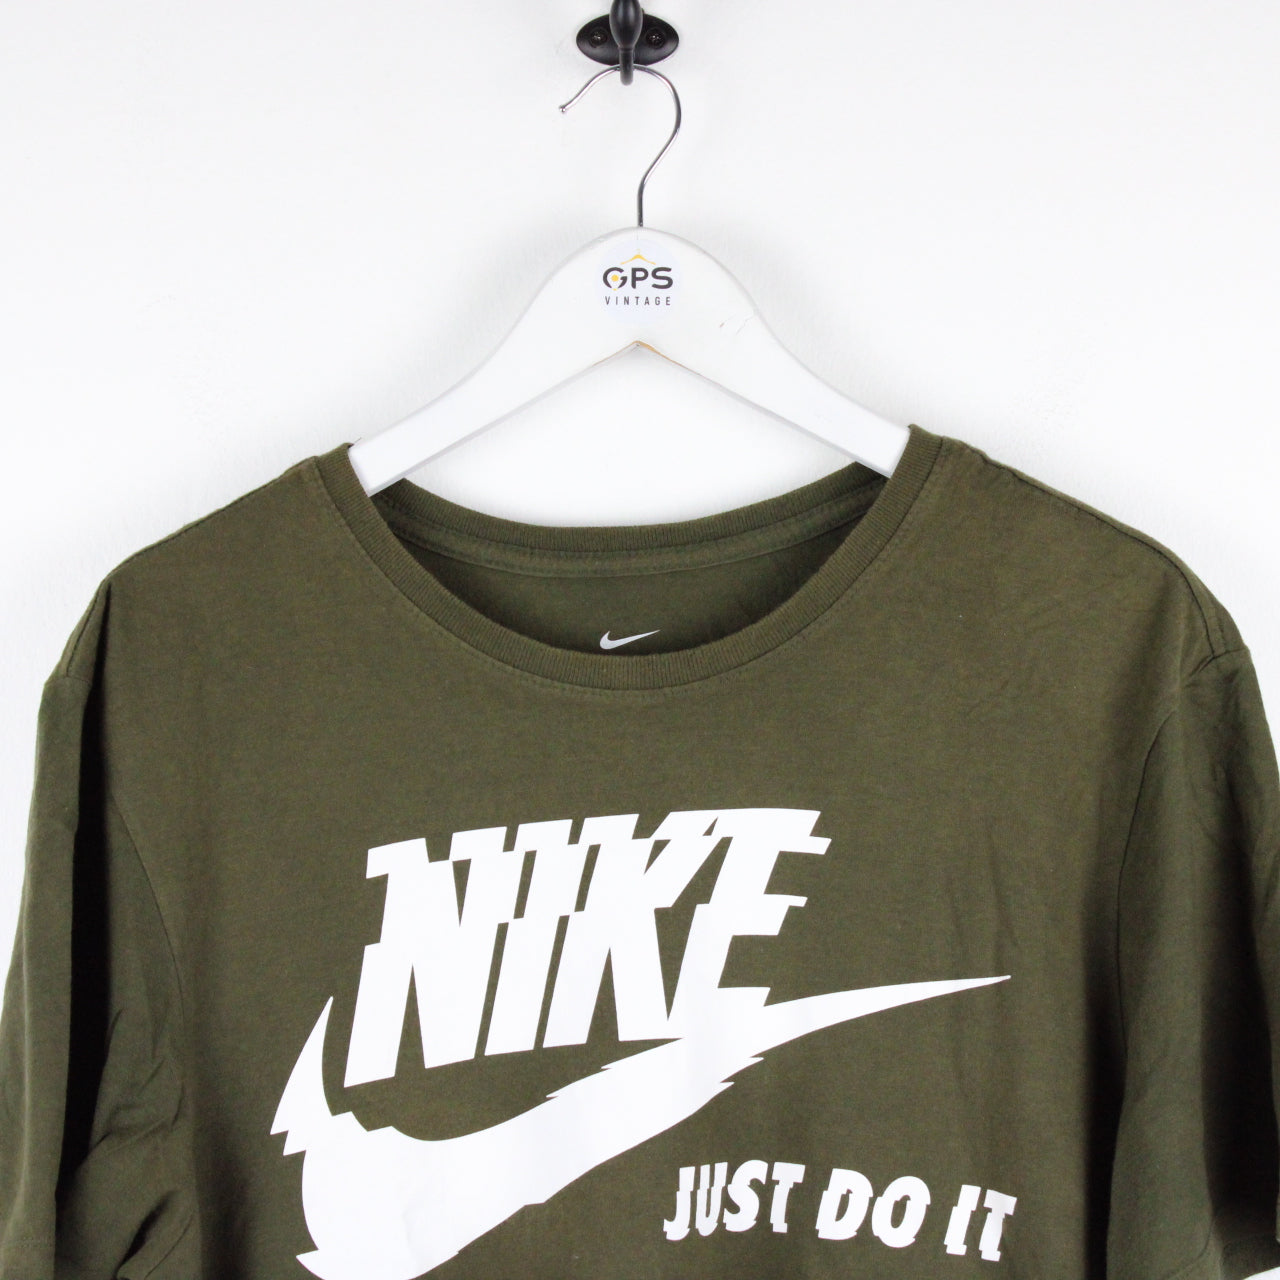 NIKE T-Shirt Green | Large